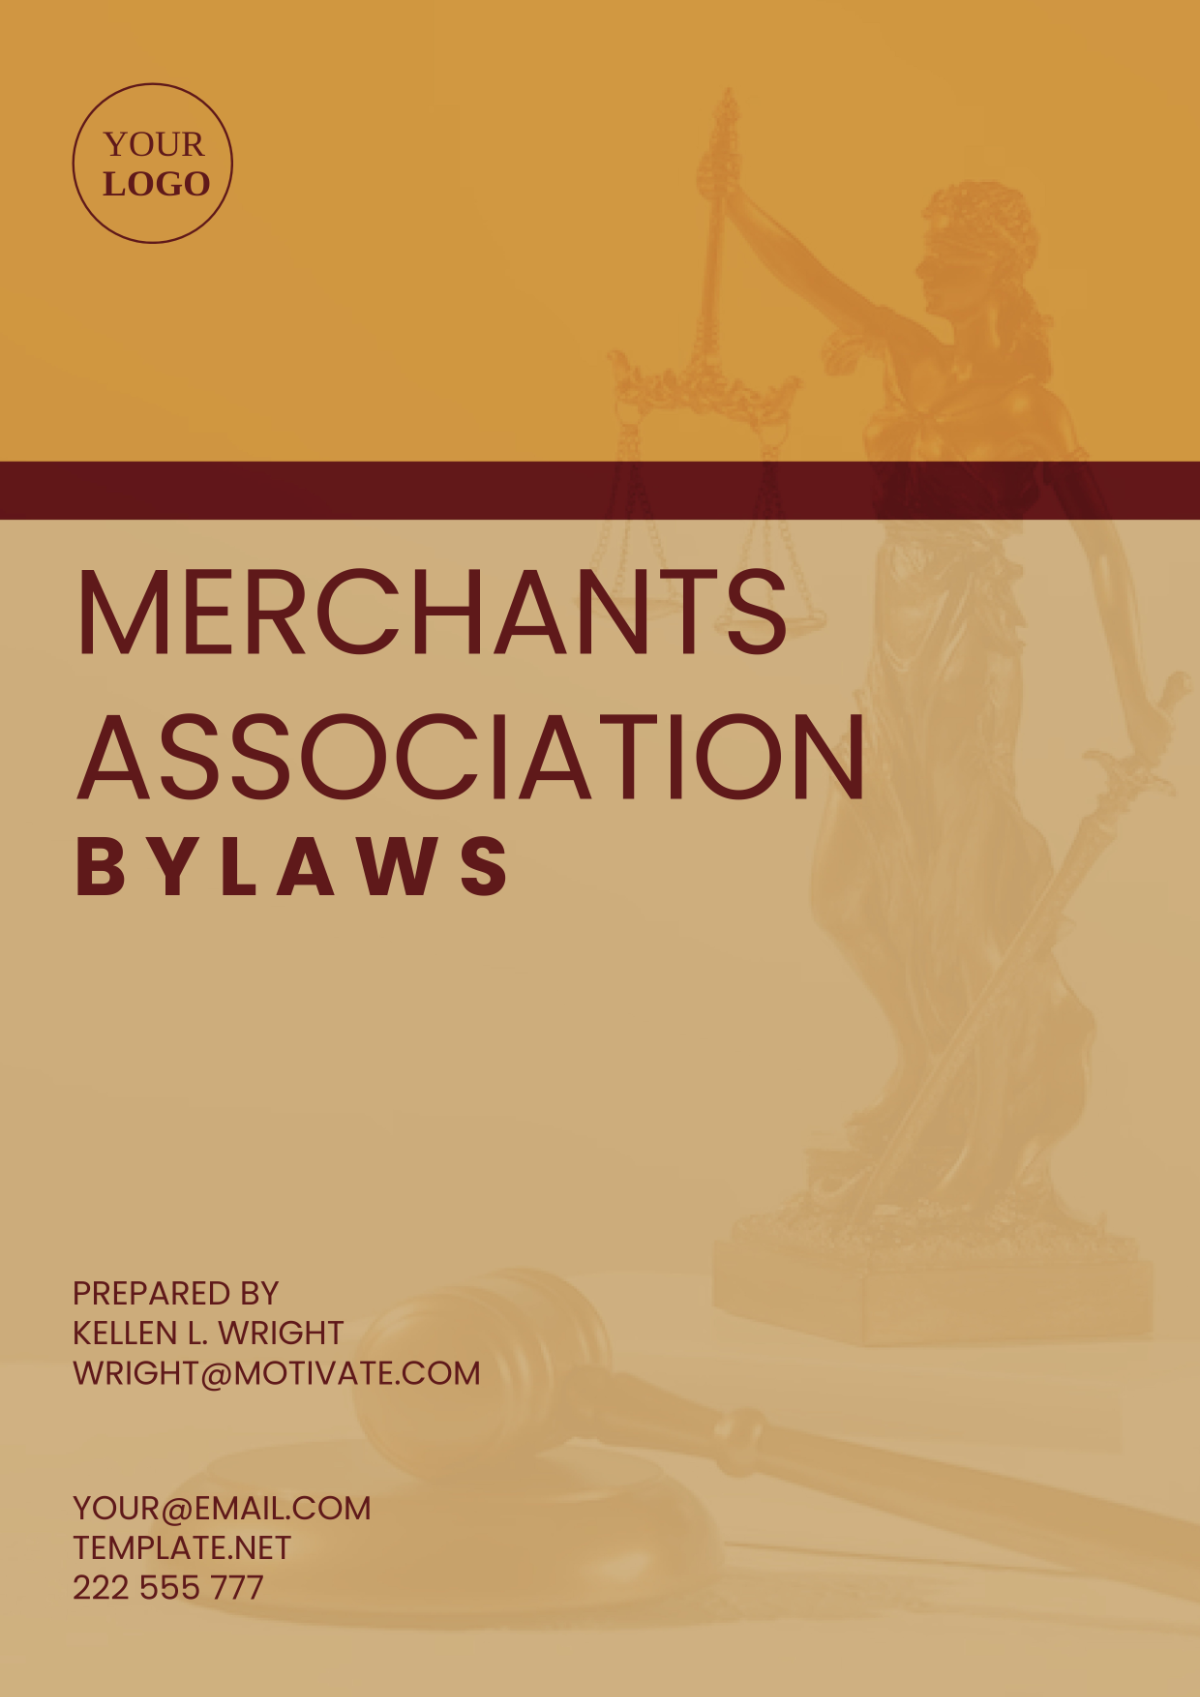 Merchants Association Bylaws Template